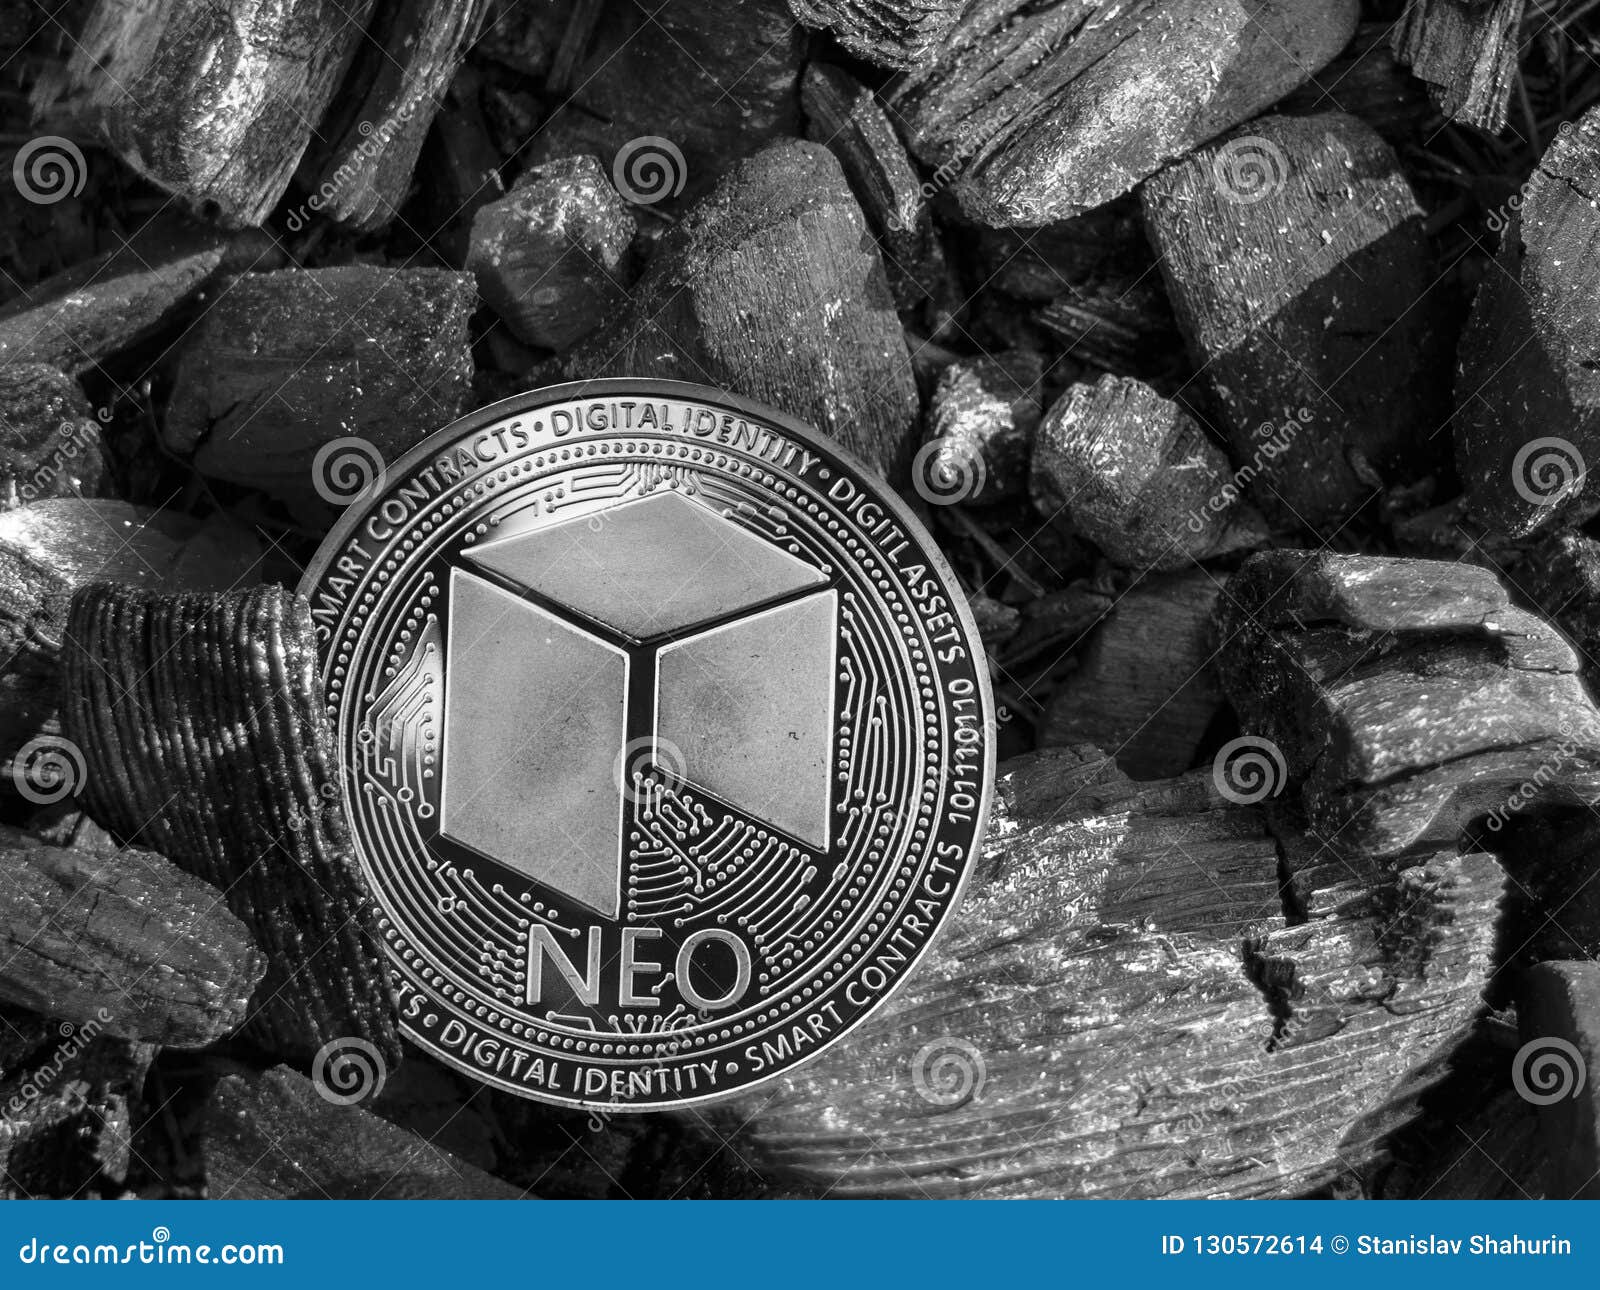 neo coin mining prekybos opcionais ce